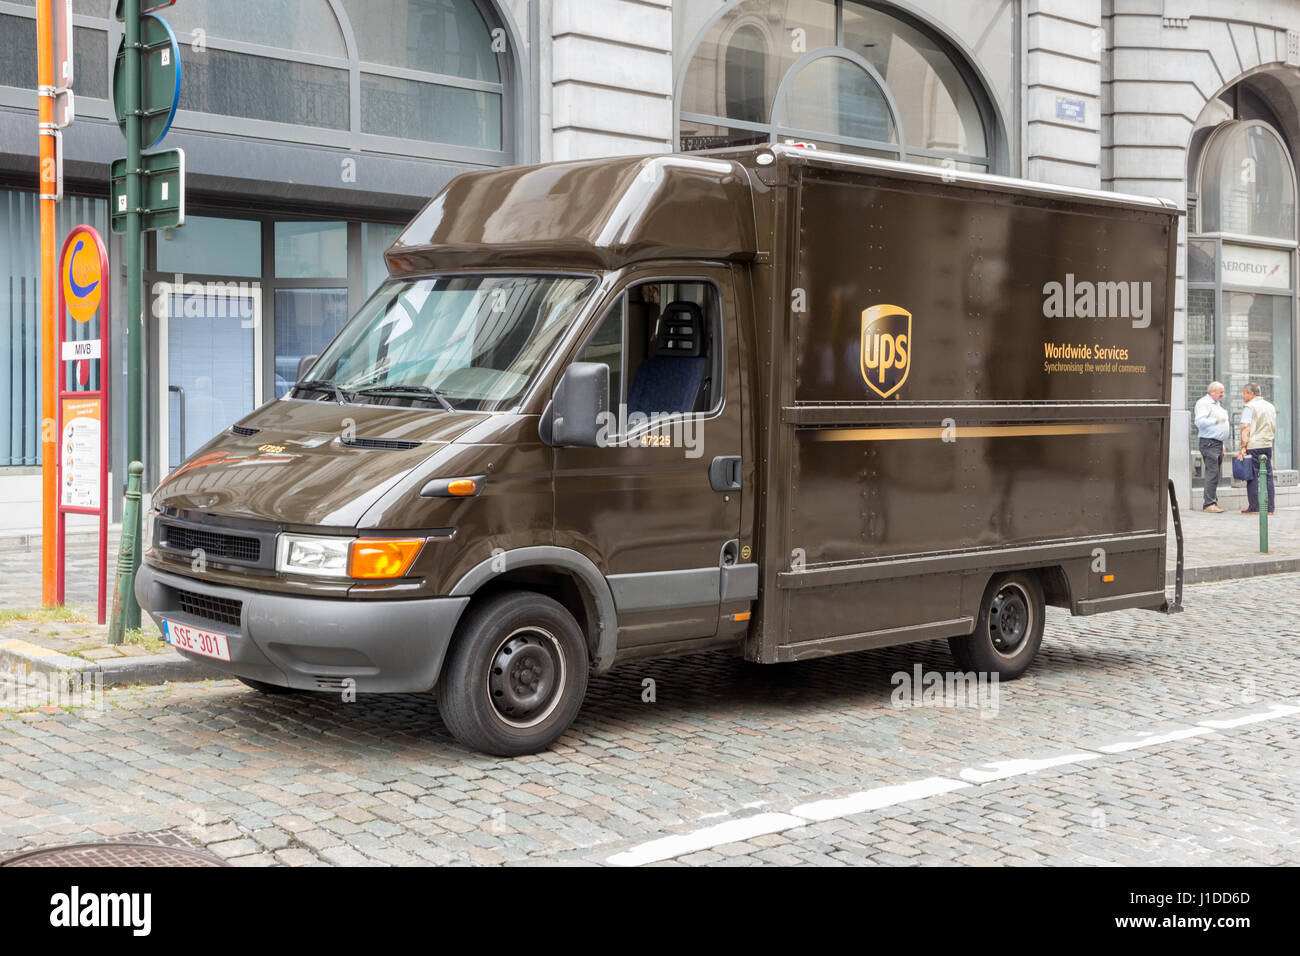 Brüssel - 30. Juli 2014: UPS LKW Fahrer liefert Pakete in Brüssel. UPS ist  einer der größten Paket Lieferung Unternehmen weltweit mit 397.100 empl  Stockfotografie - Alamy